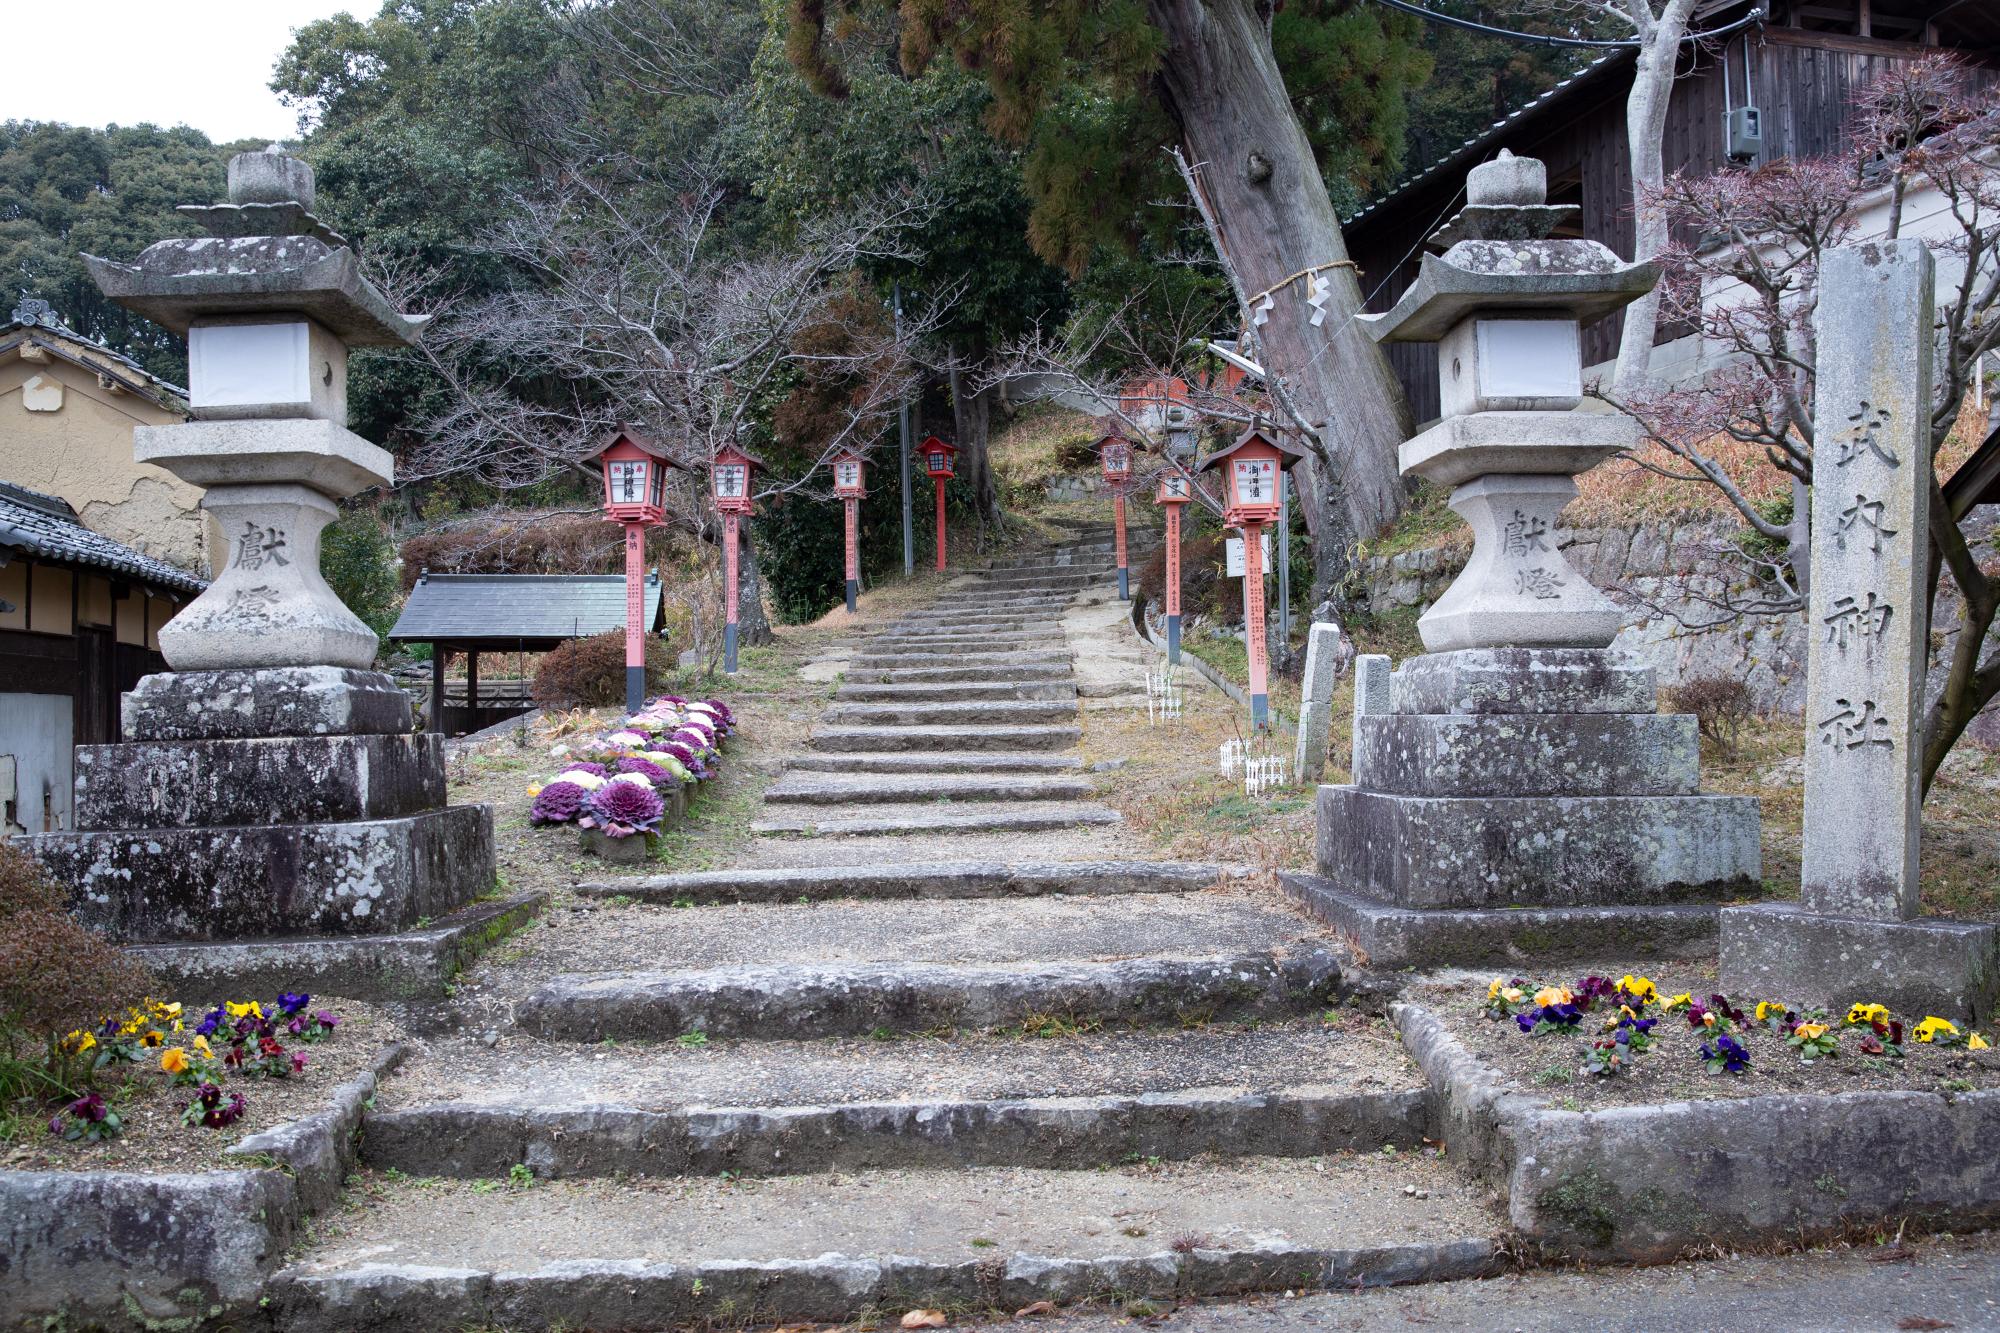 武内神社 (渋川市)